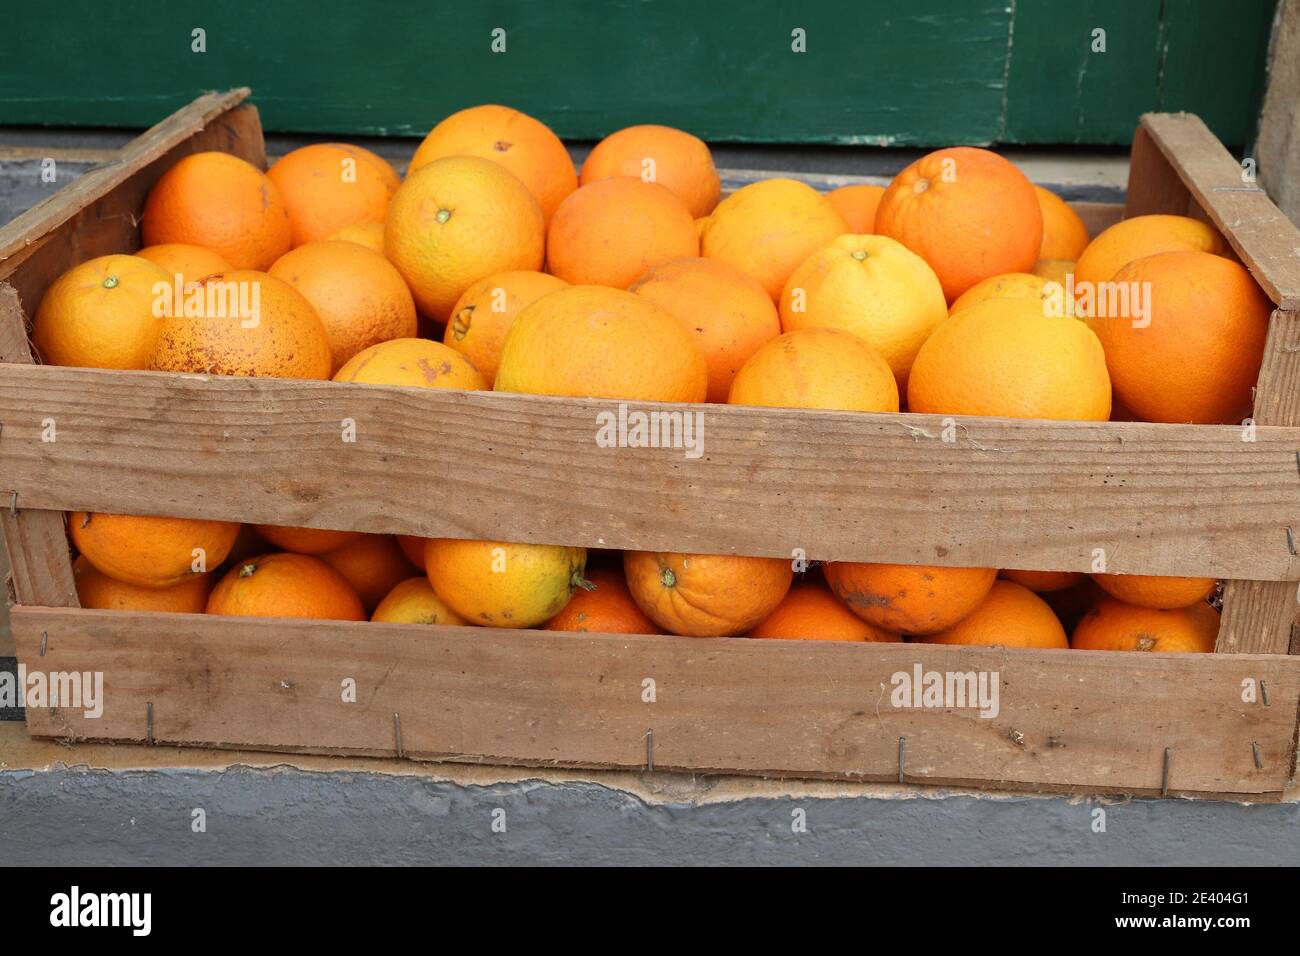 Boîte d'oranges fraîches dans la région de l'Algarve, Portugal. Fruits portugais. Banque D'Images